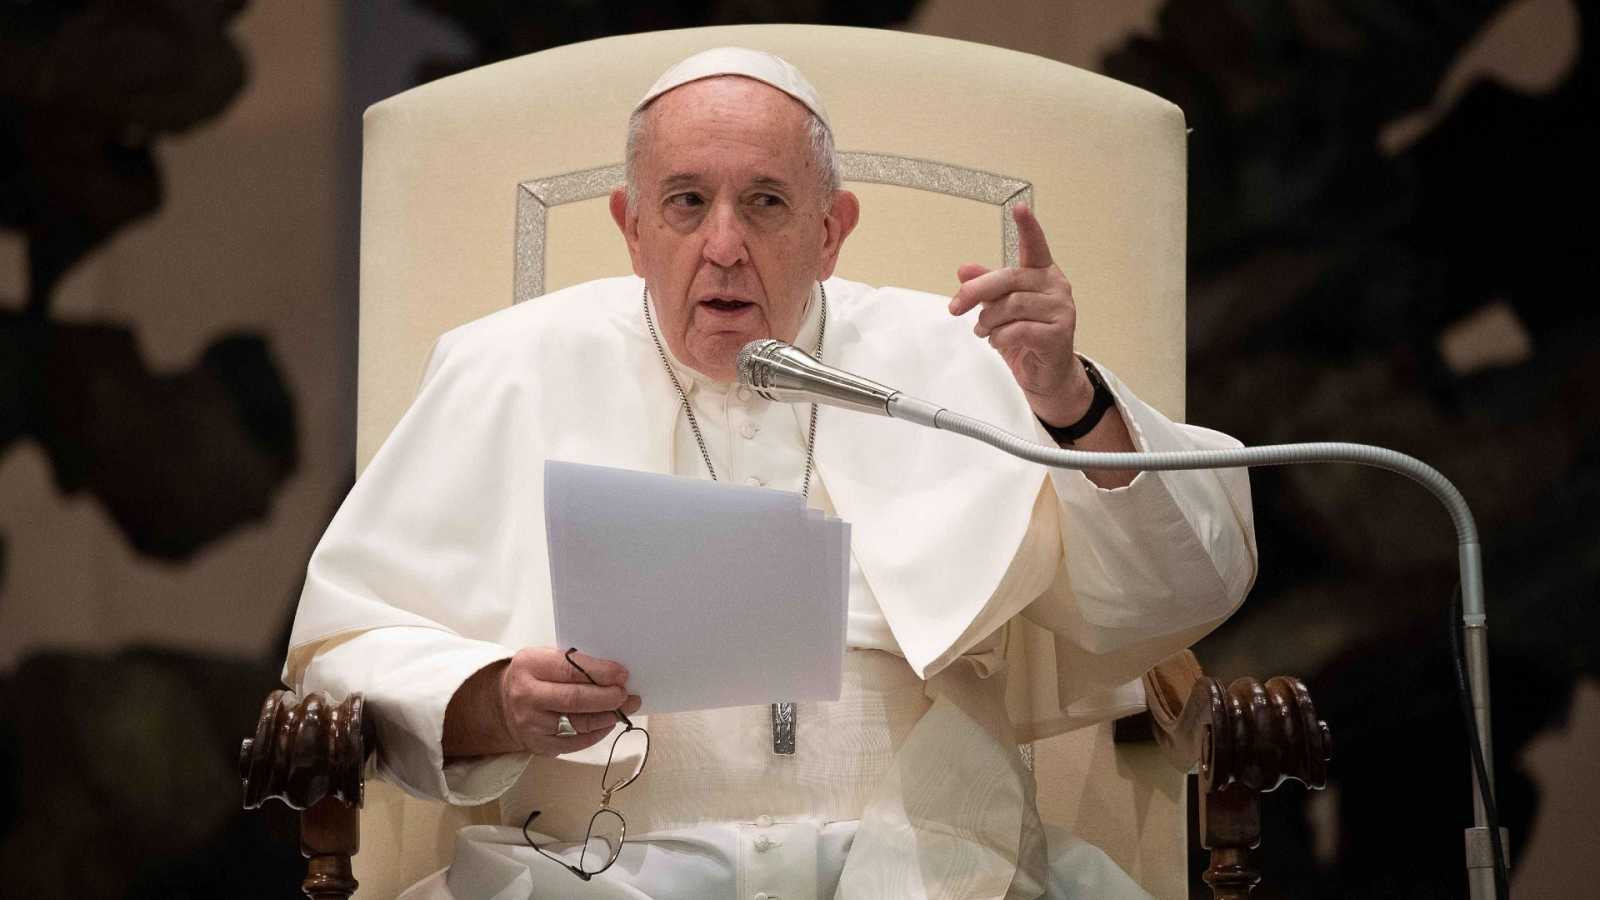 ”Aborto es homicidio", dice el papa Francisco